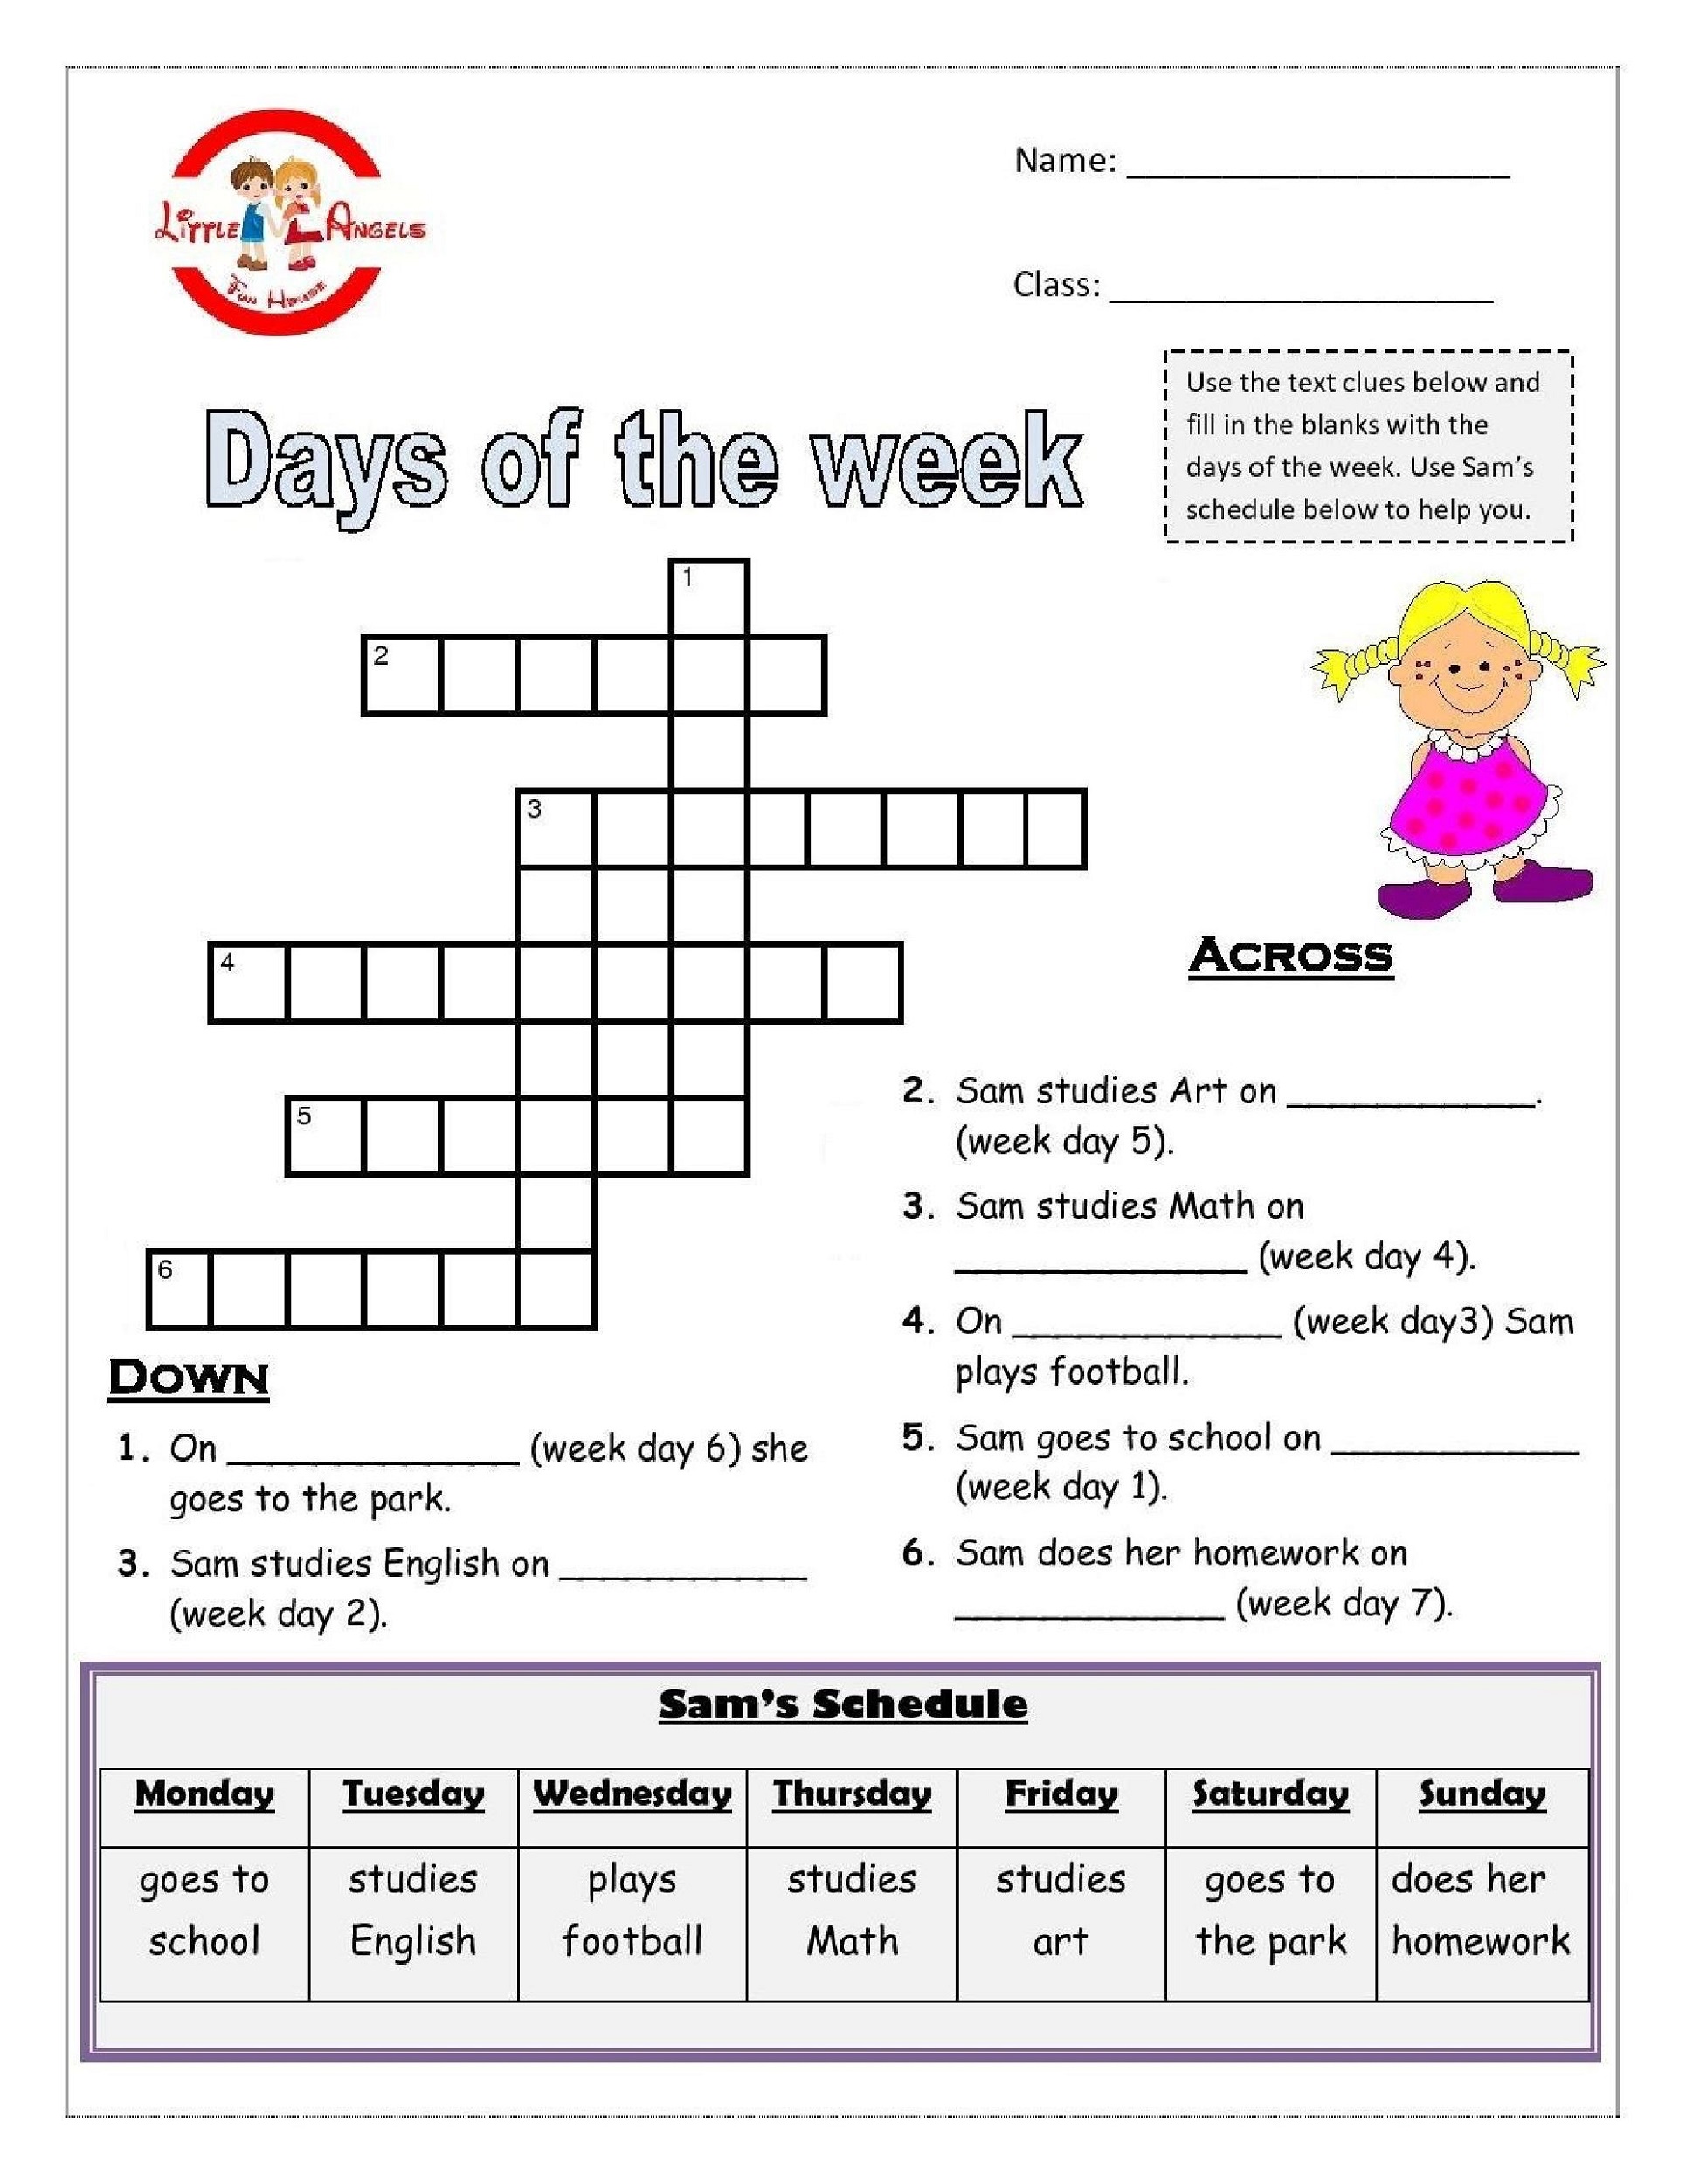 days of the week activities crossword